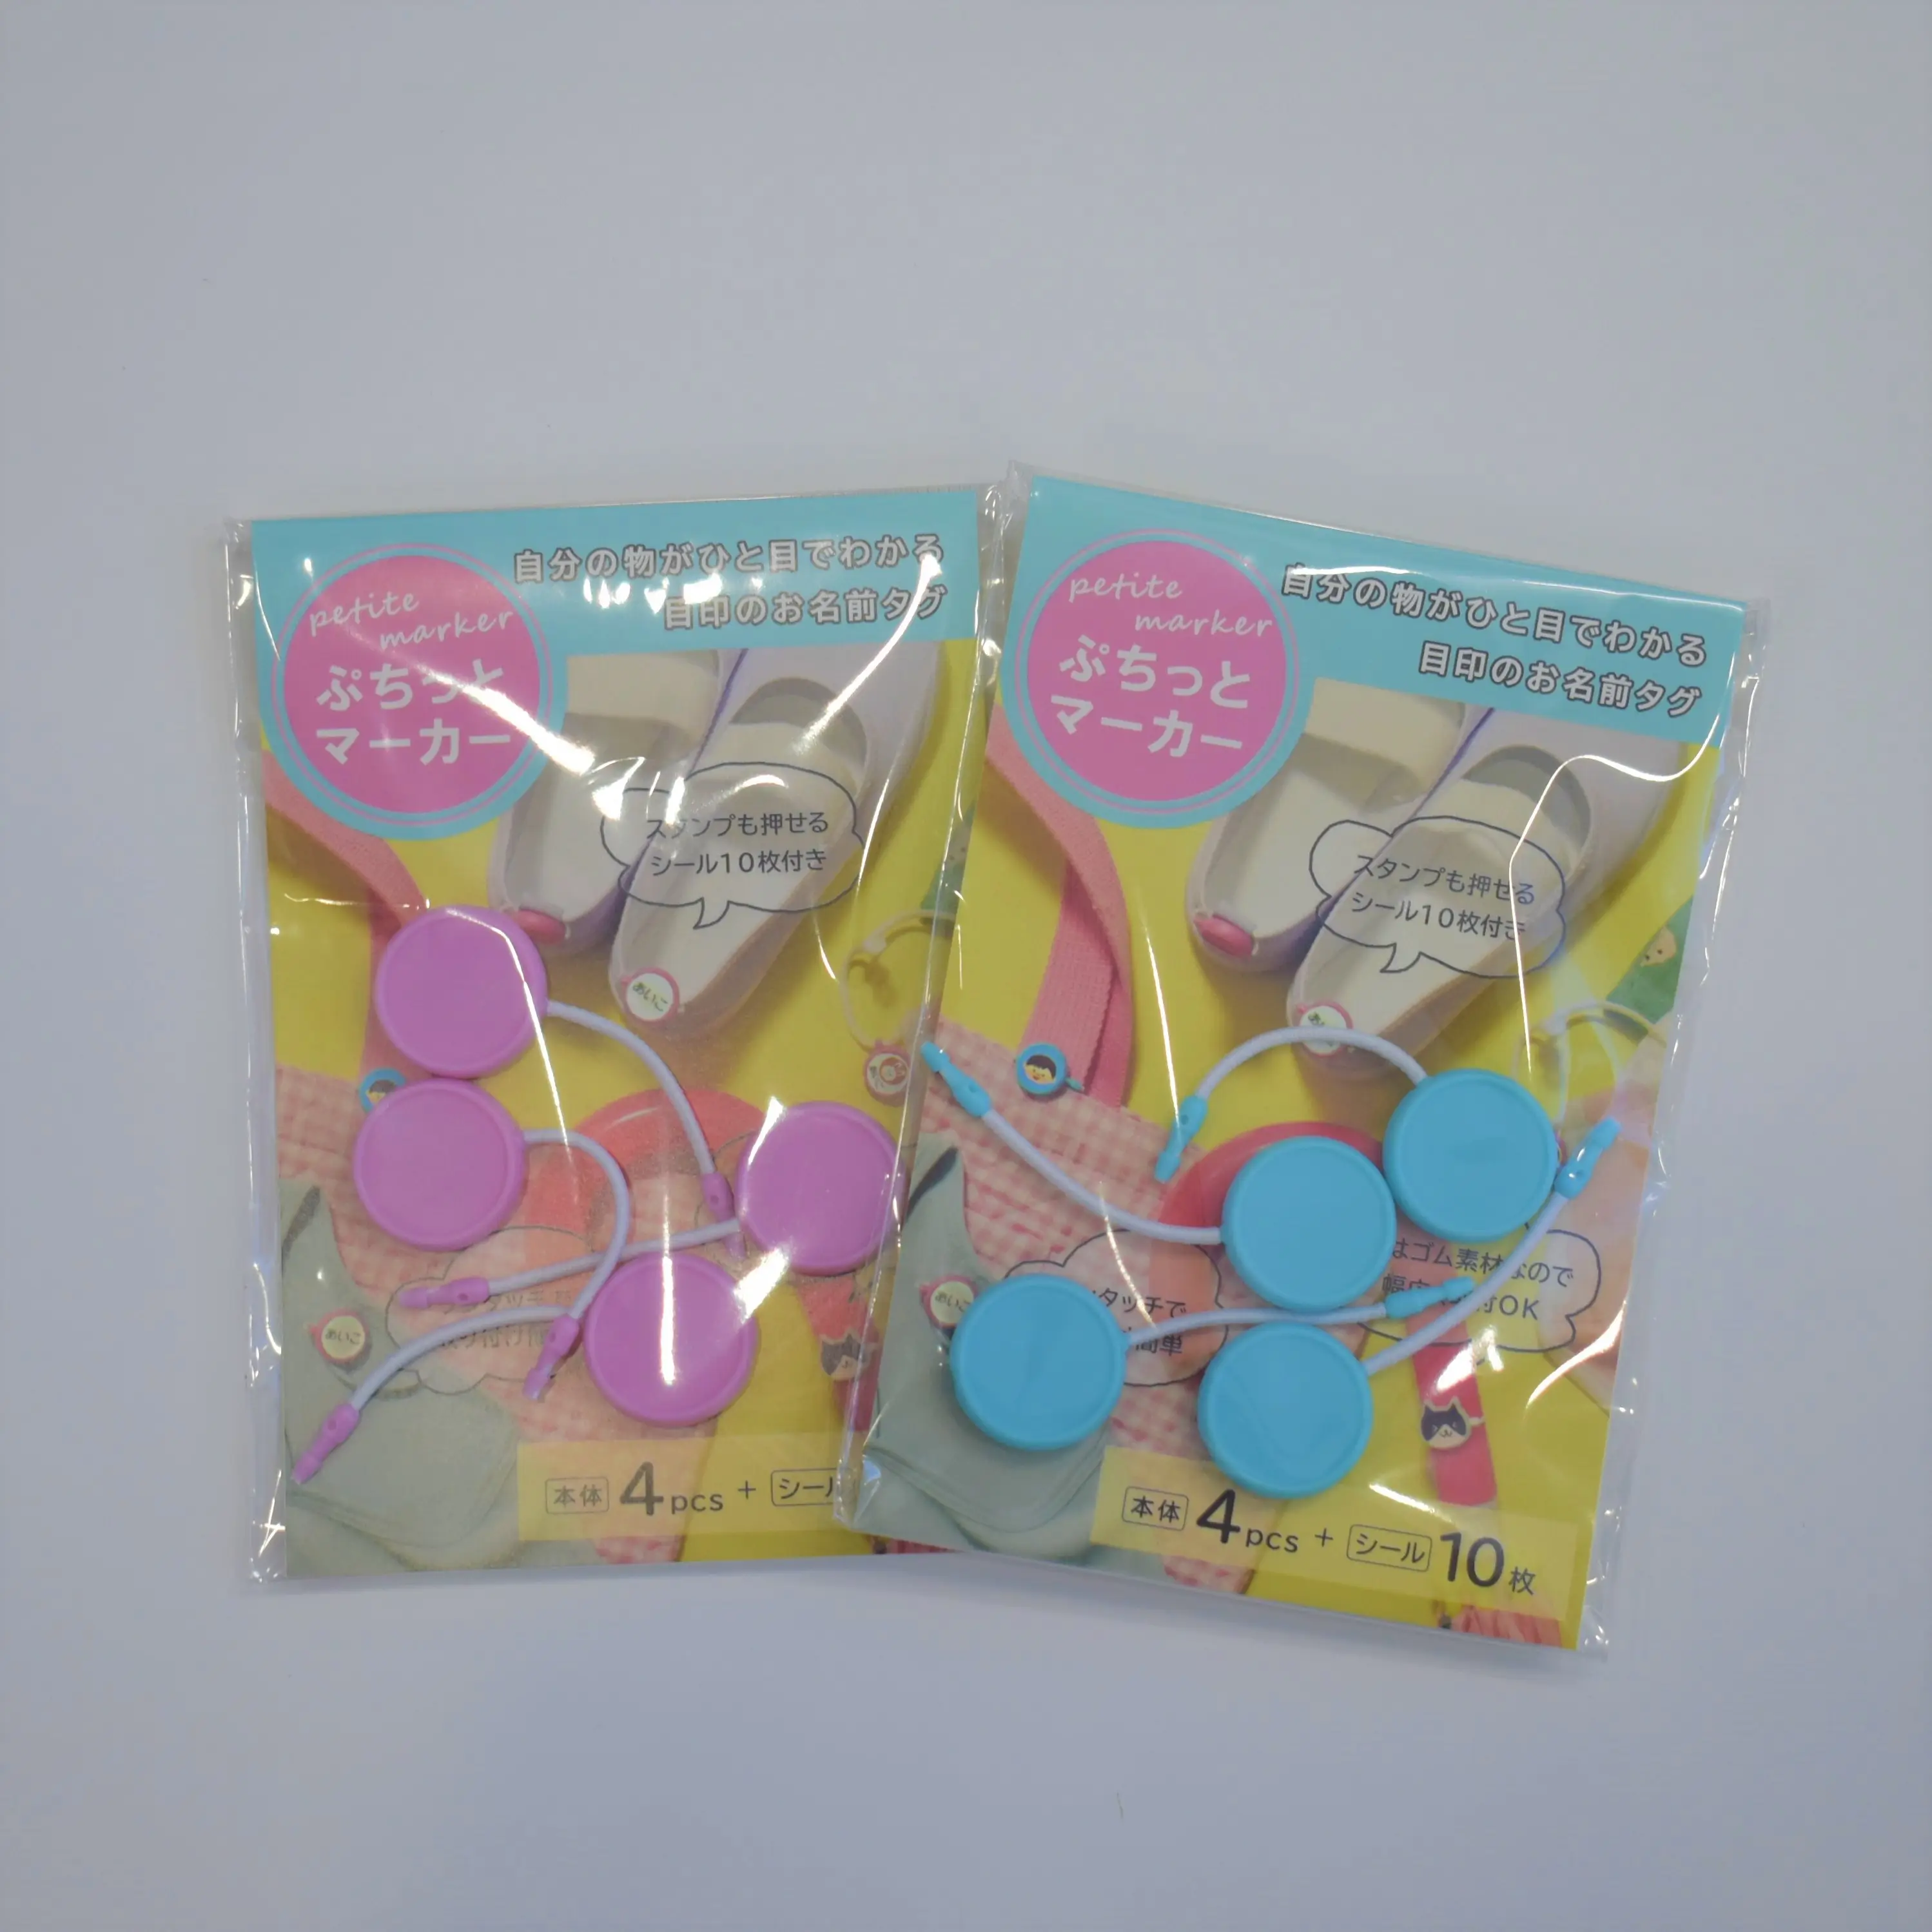 Mini Marker Gemaakt In Japan Markering Schoenen Paraplu Hoed Tas Tas Spullen Shirt Jurk Kledingstuk Accessoires Roze Blauwe Kleur Souvenir